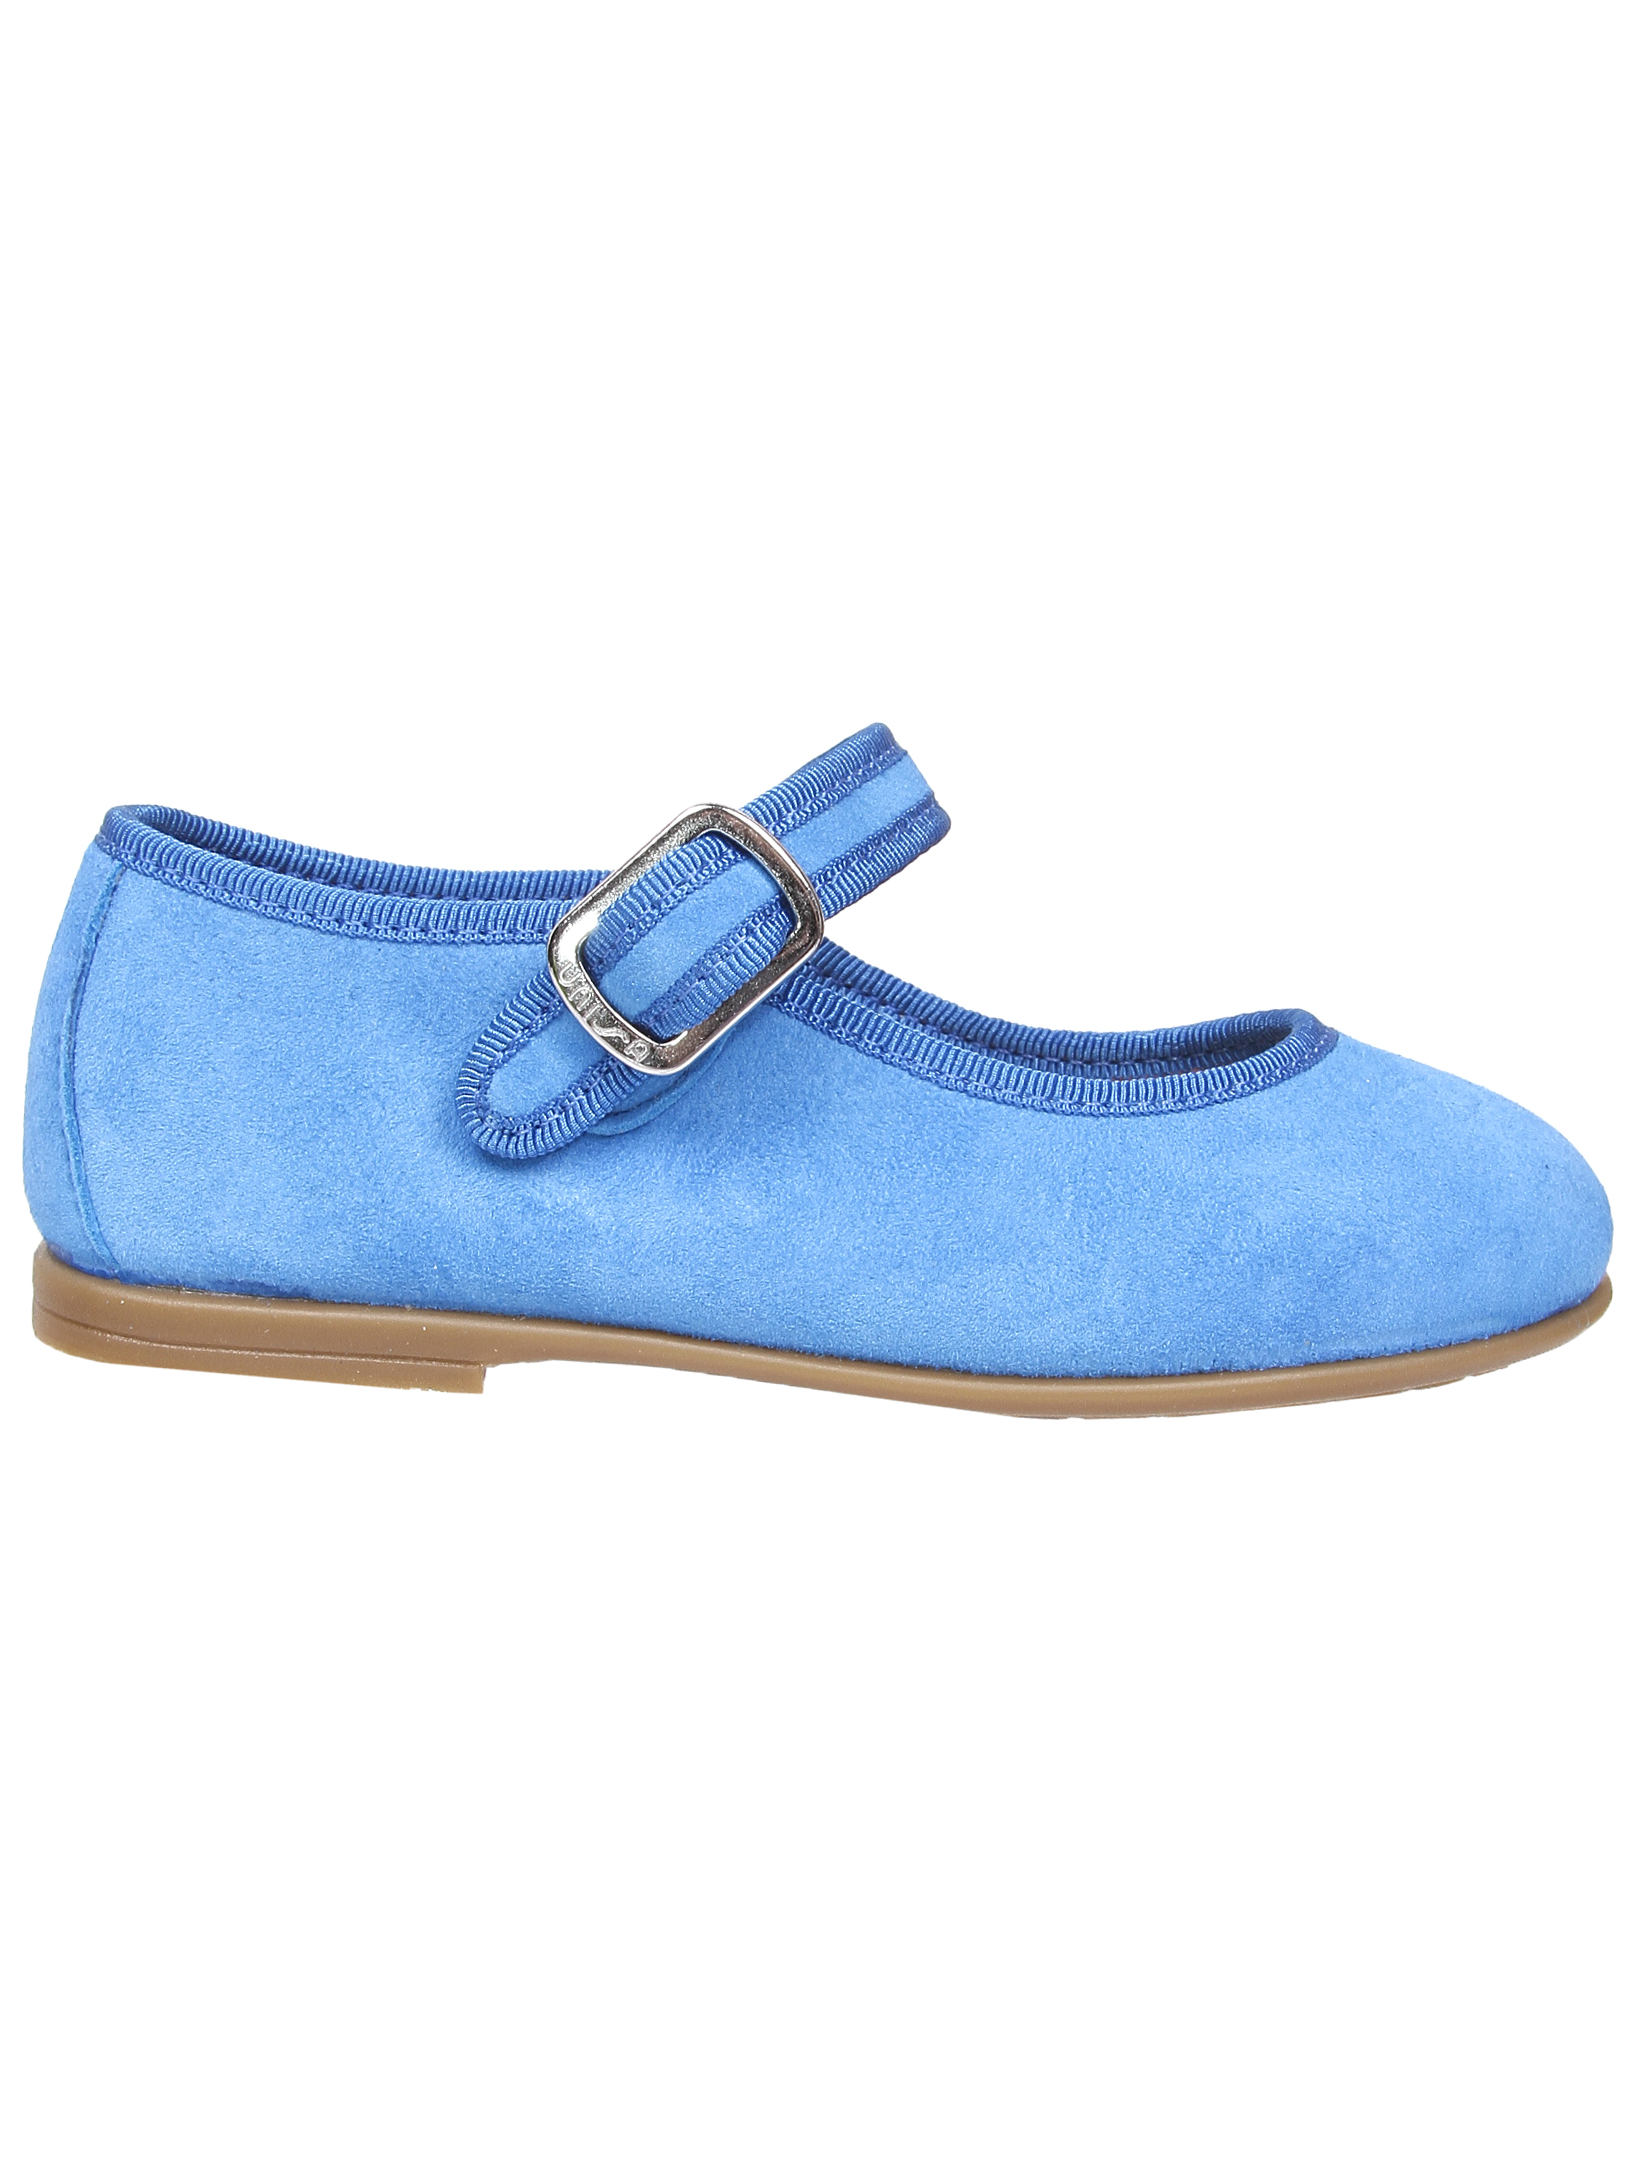 Туфли UNISA 1952860, цвет голубой, размер 30 2011509970013 - фото 3